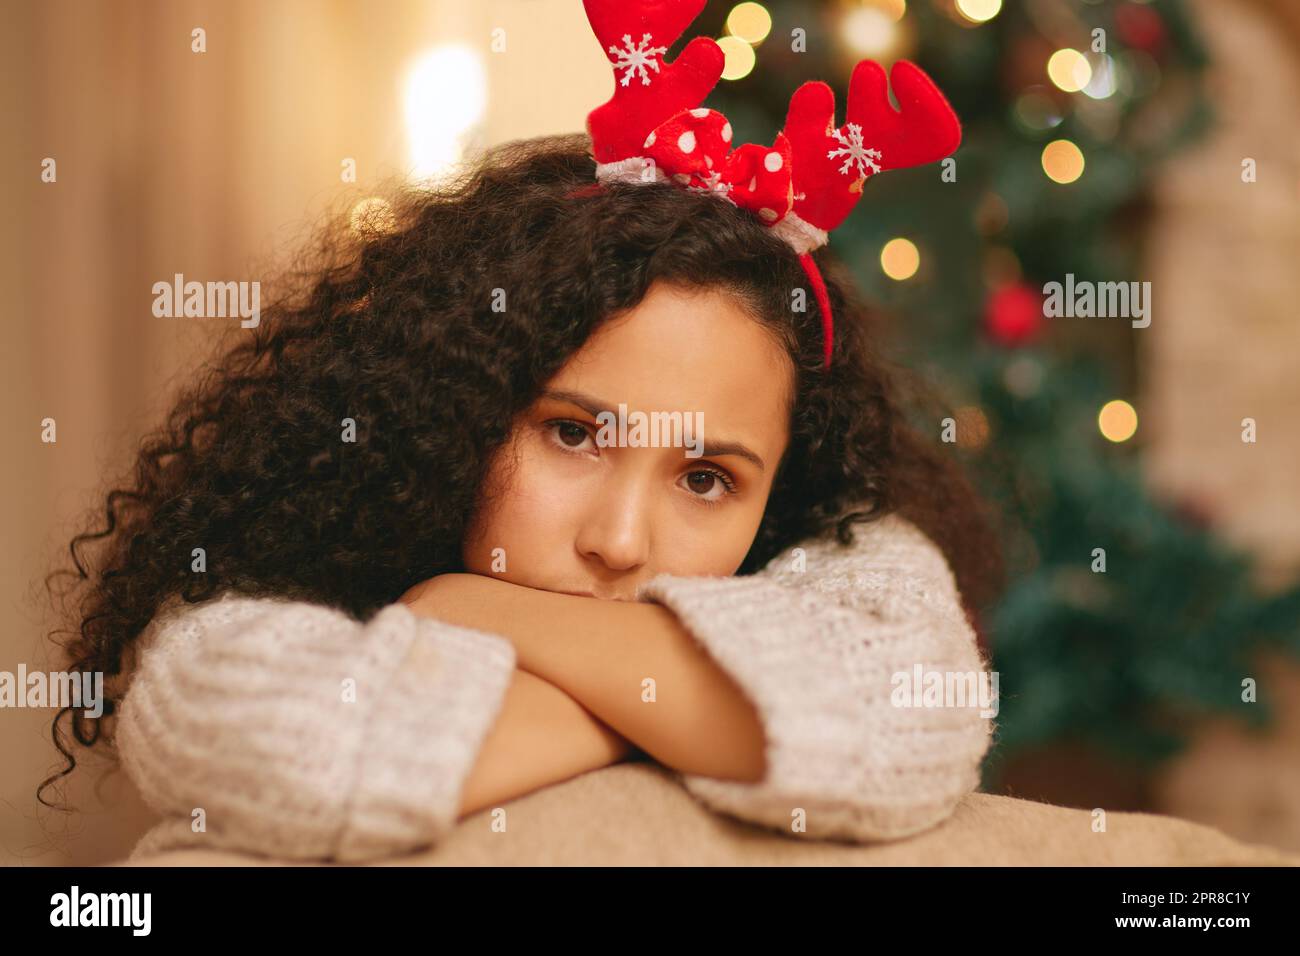 Nichts glücklich über meinen Urlaub. Eine junge Frau, die sich während der Weihnachtszeit zu Hause unglücklich fühlt. Stockfoto